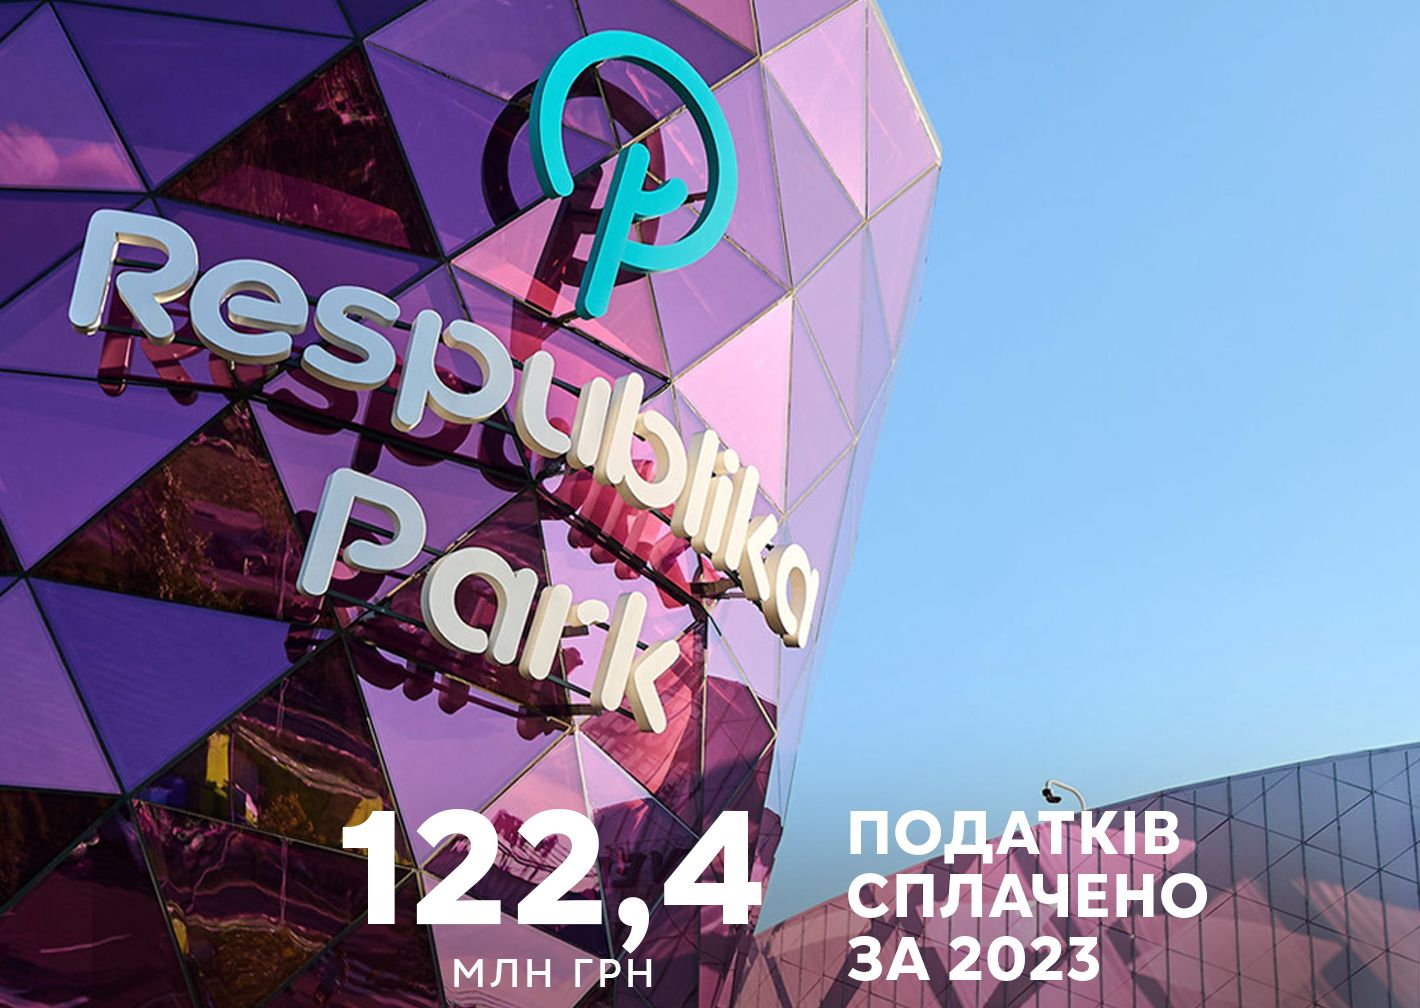 ТРЦ Respublika Park сплатив 122,4 млн грн податків до державного бюджету за минулий рік. Thumbnail